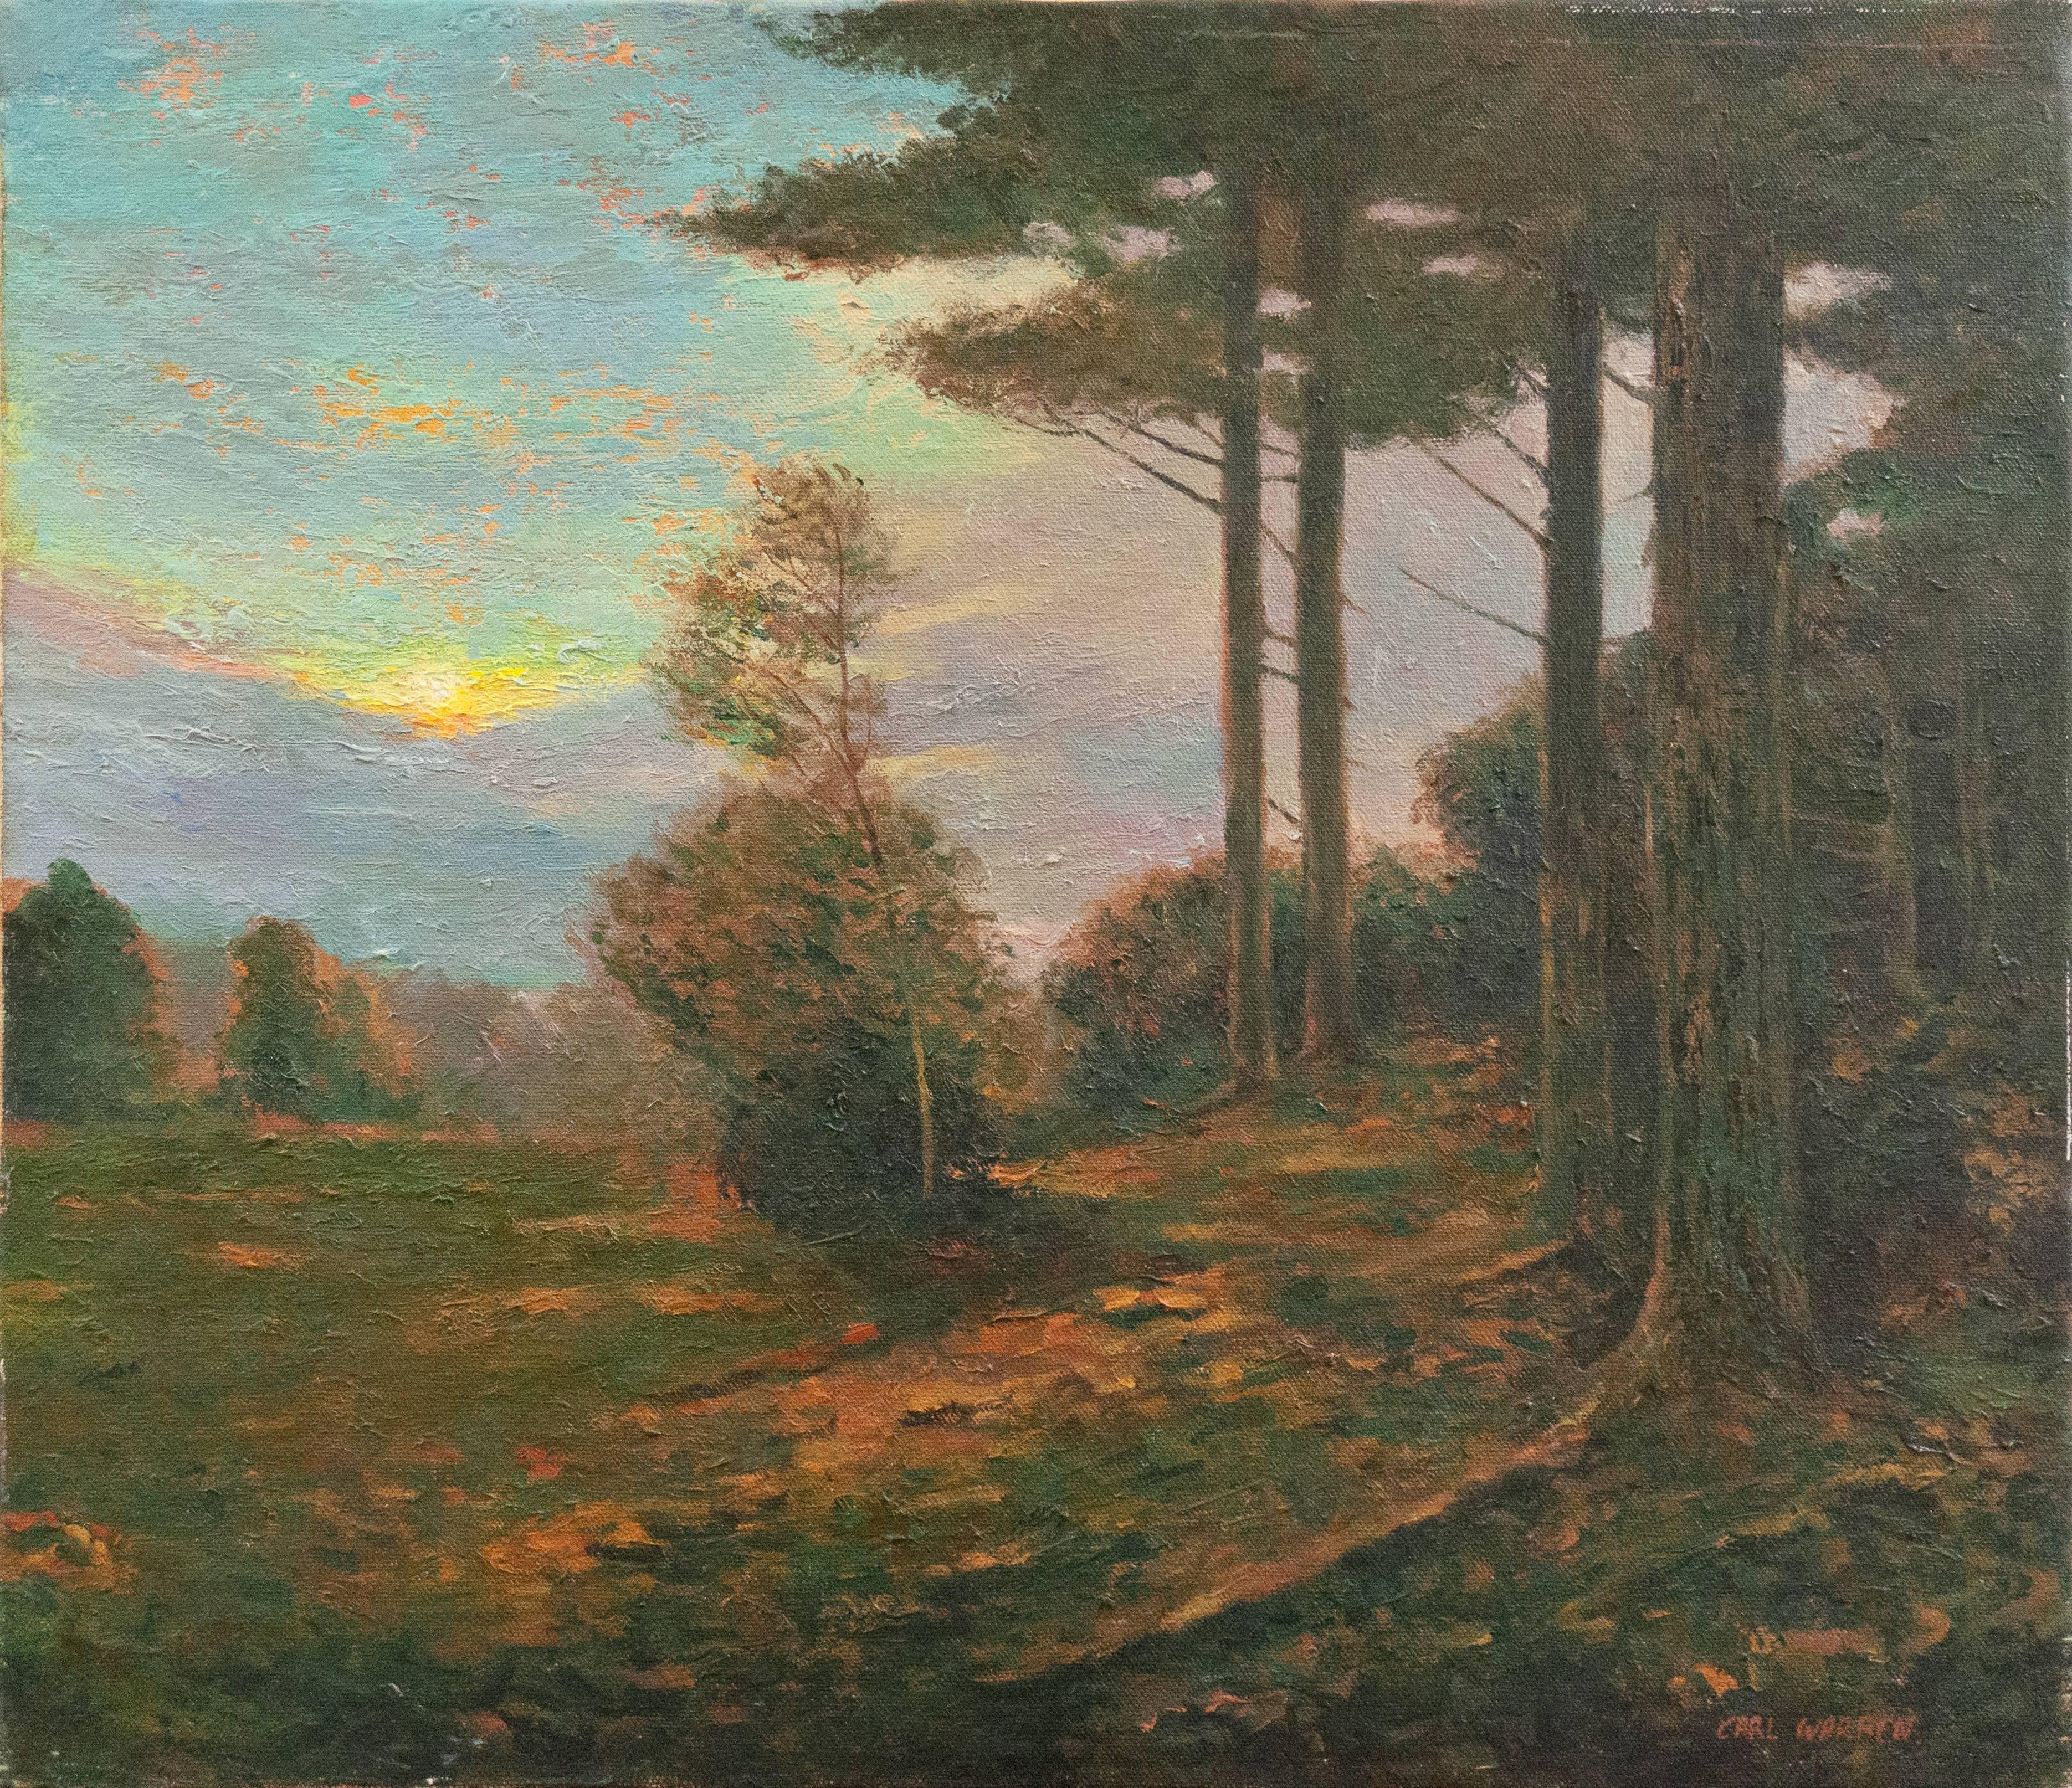 Landscape Painting Carl Warren - « Paysage de coucher de soleil »